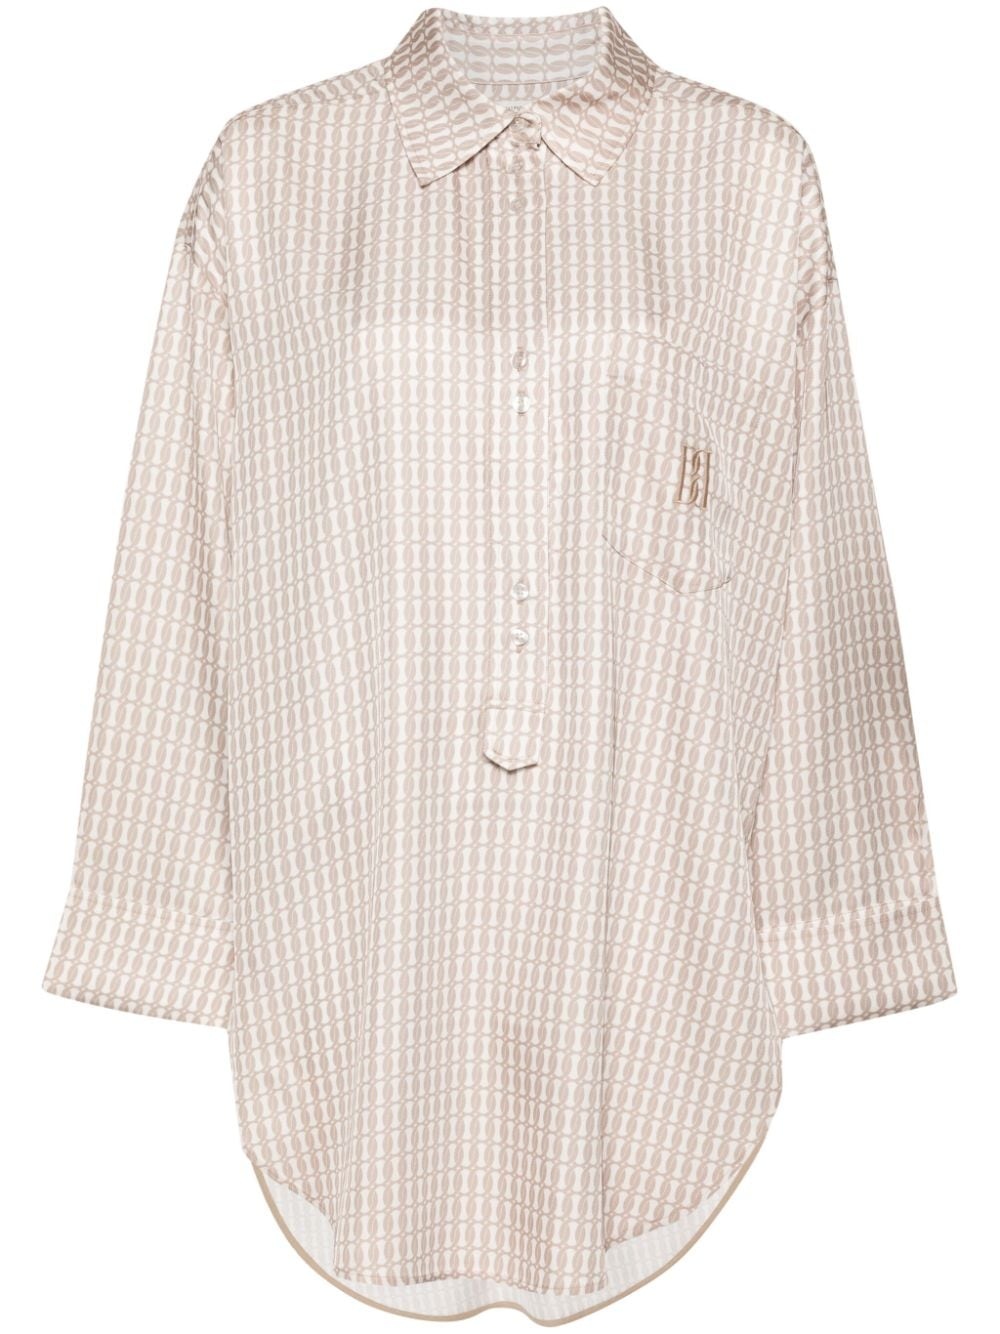 geometric-pattern blouse - 1